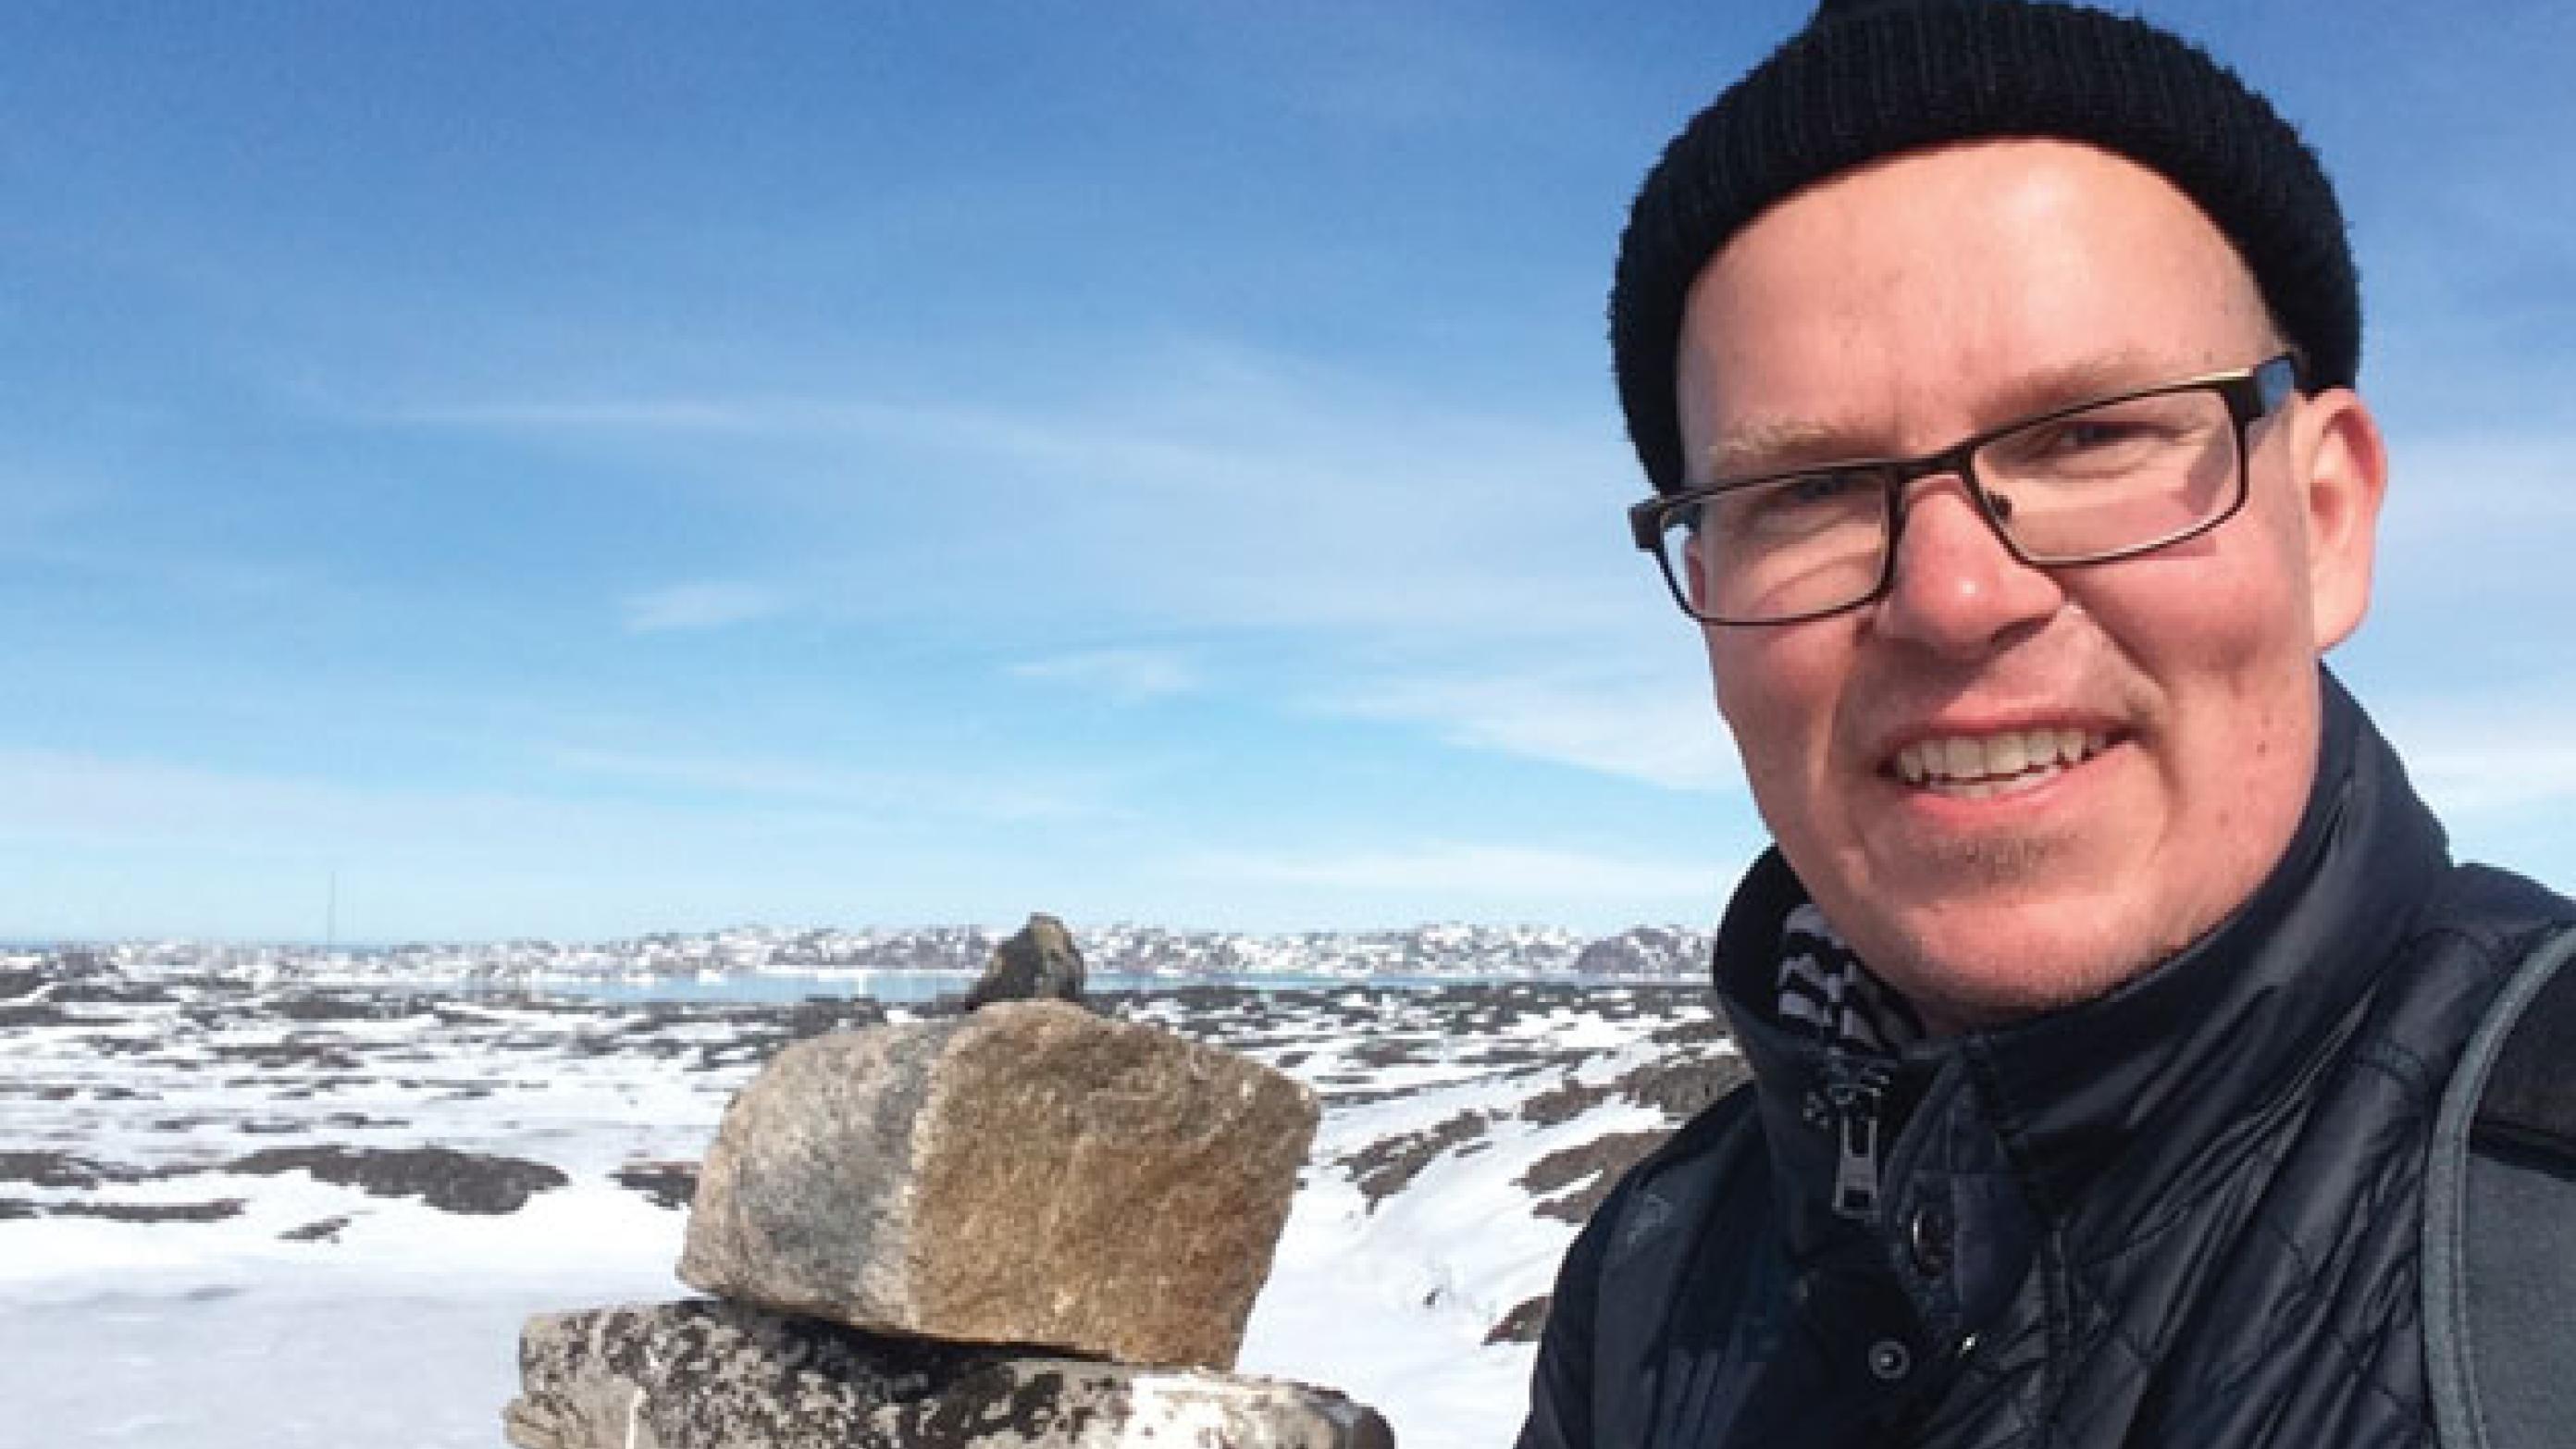 Midt i naturen. En selfie af Lars Green Dall i Grønland (privatfoto).